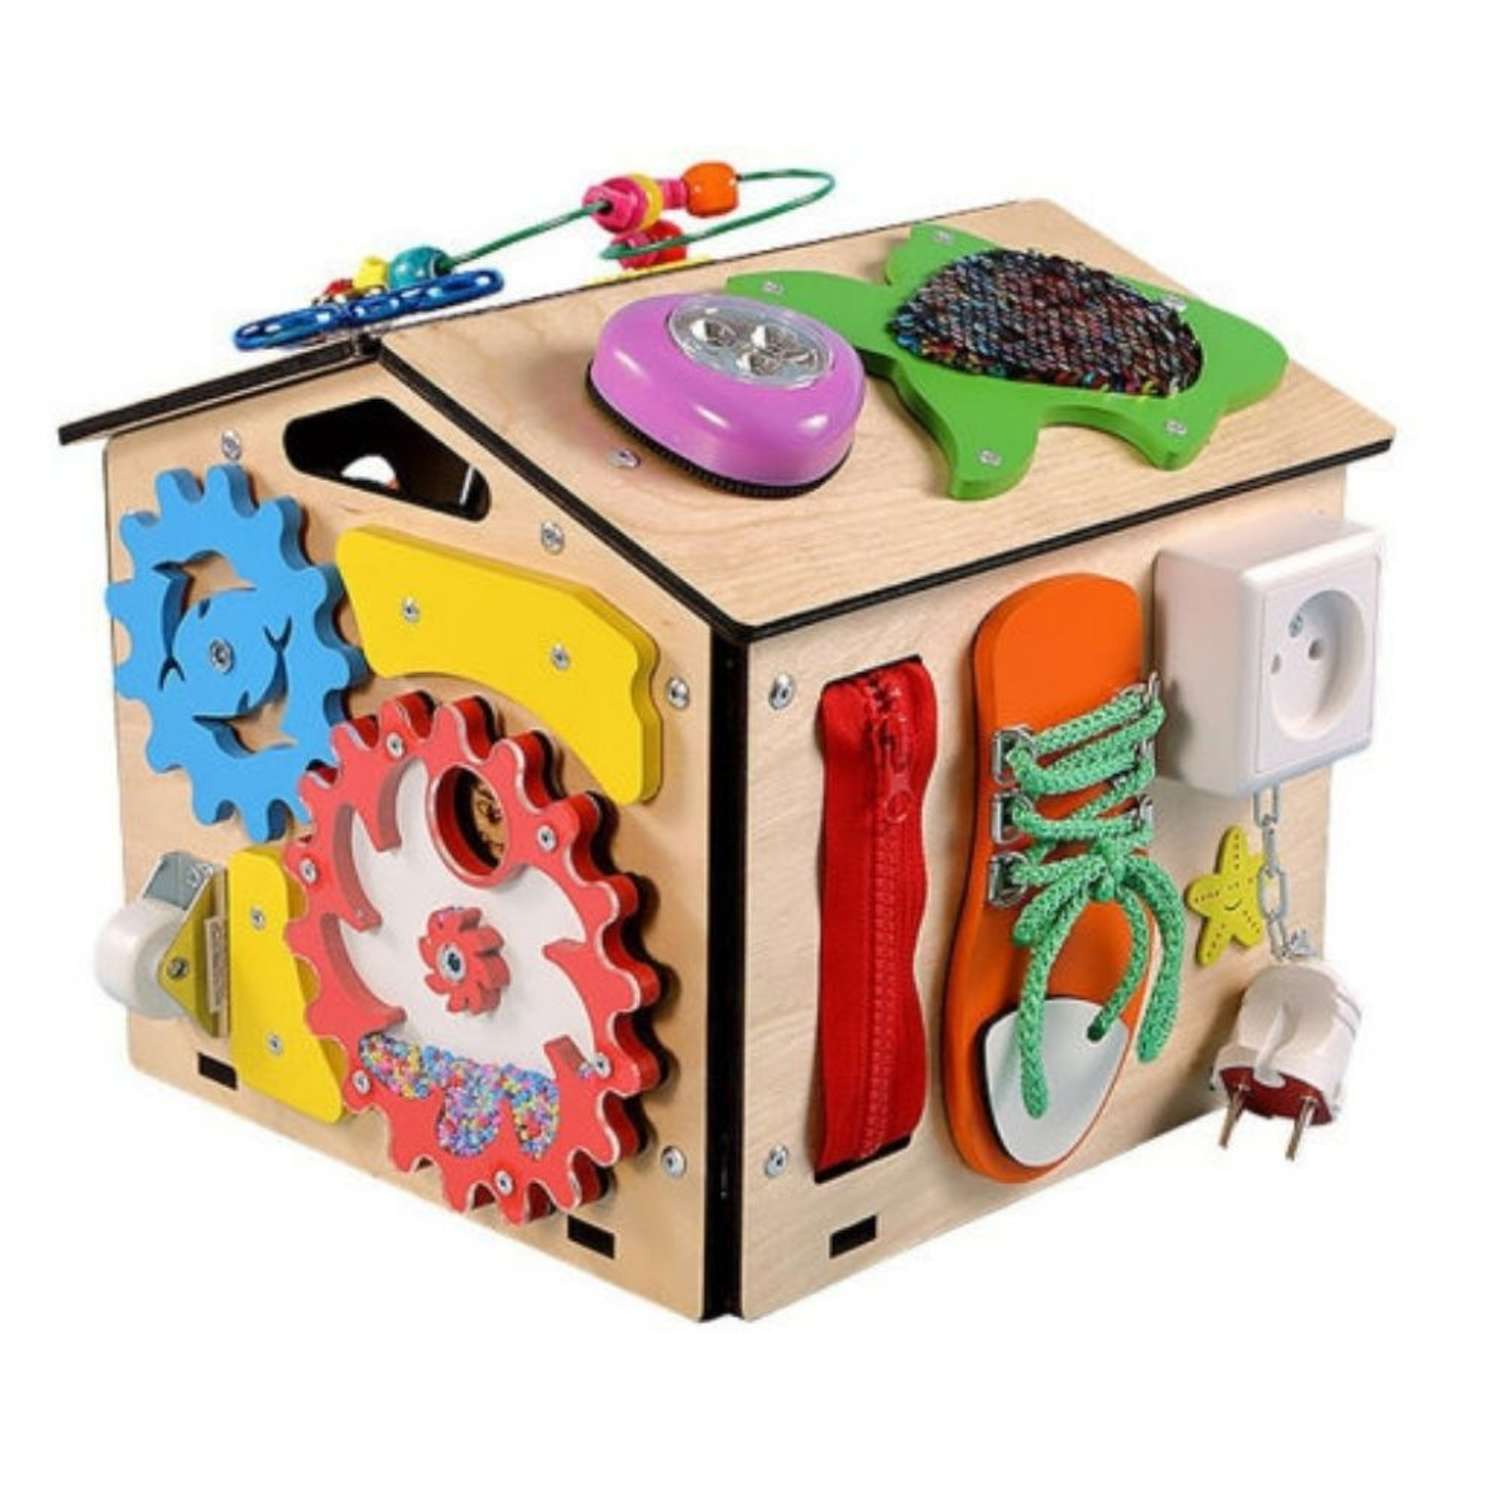 Бизиборд KimToys Домик со светом Малышок игрушка для девочек и мальчиков - фото 4